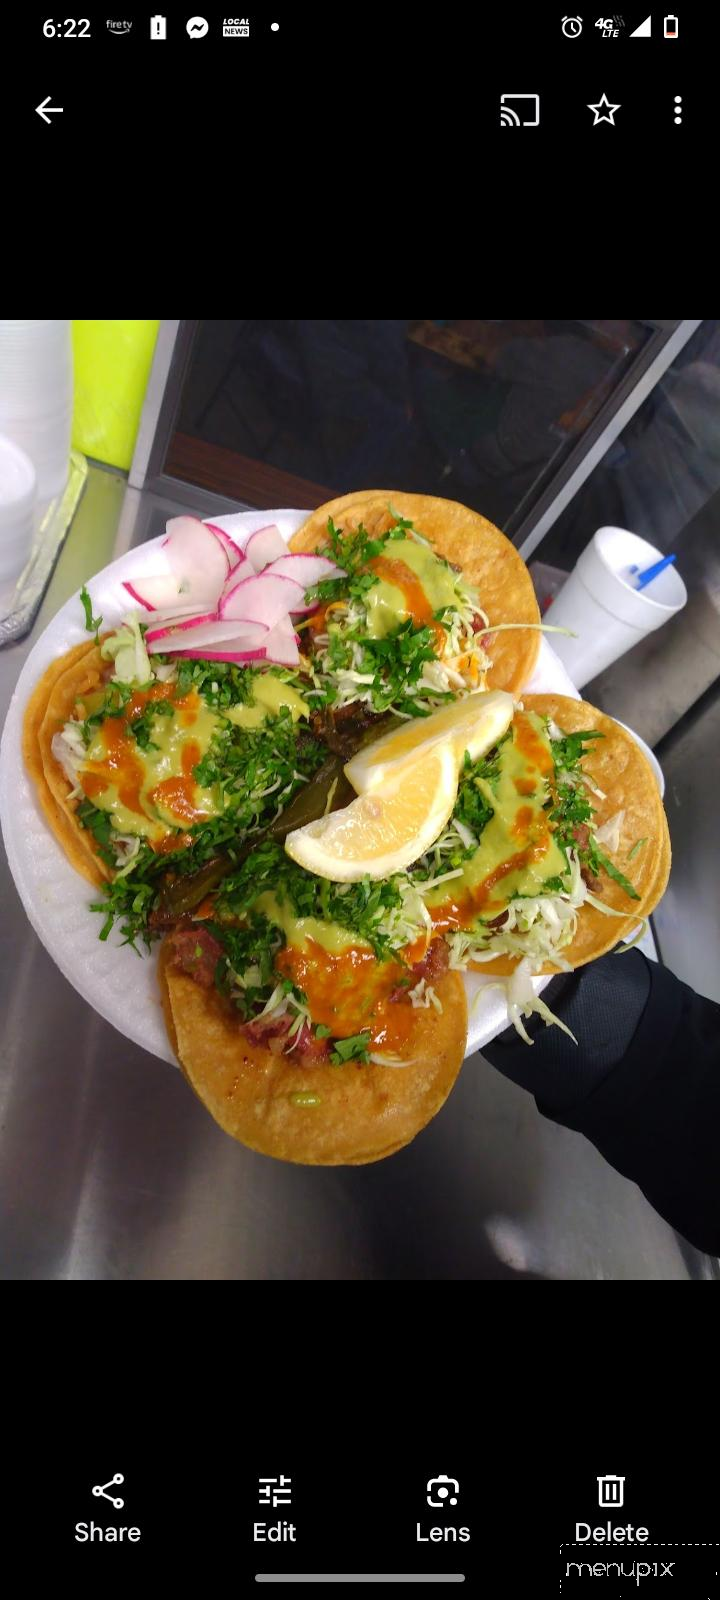 Tacos El Vitor - Reedley, CA